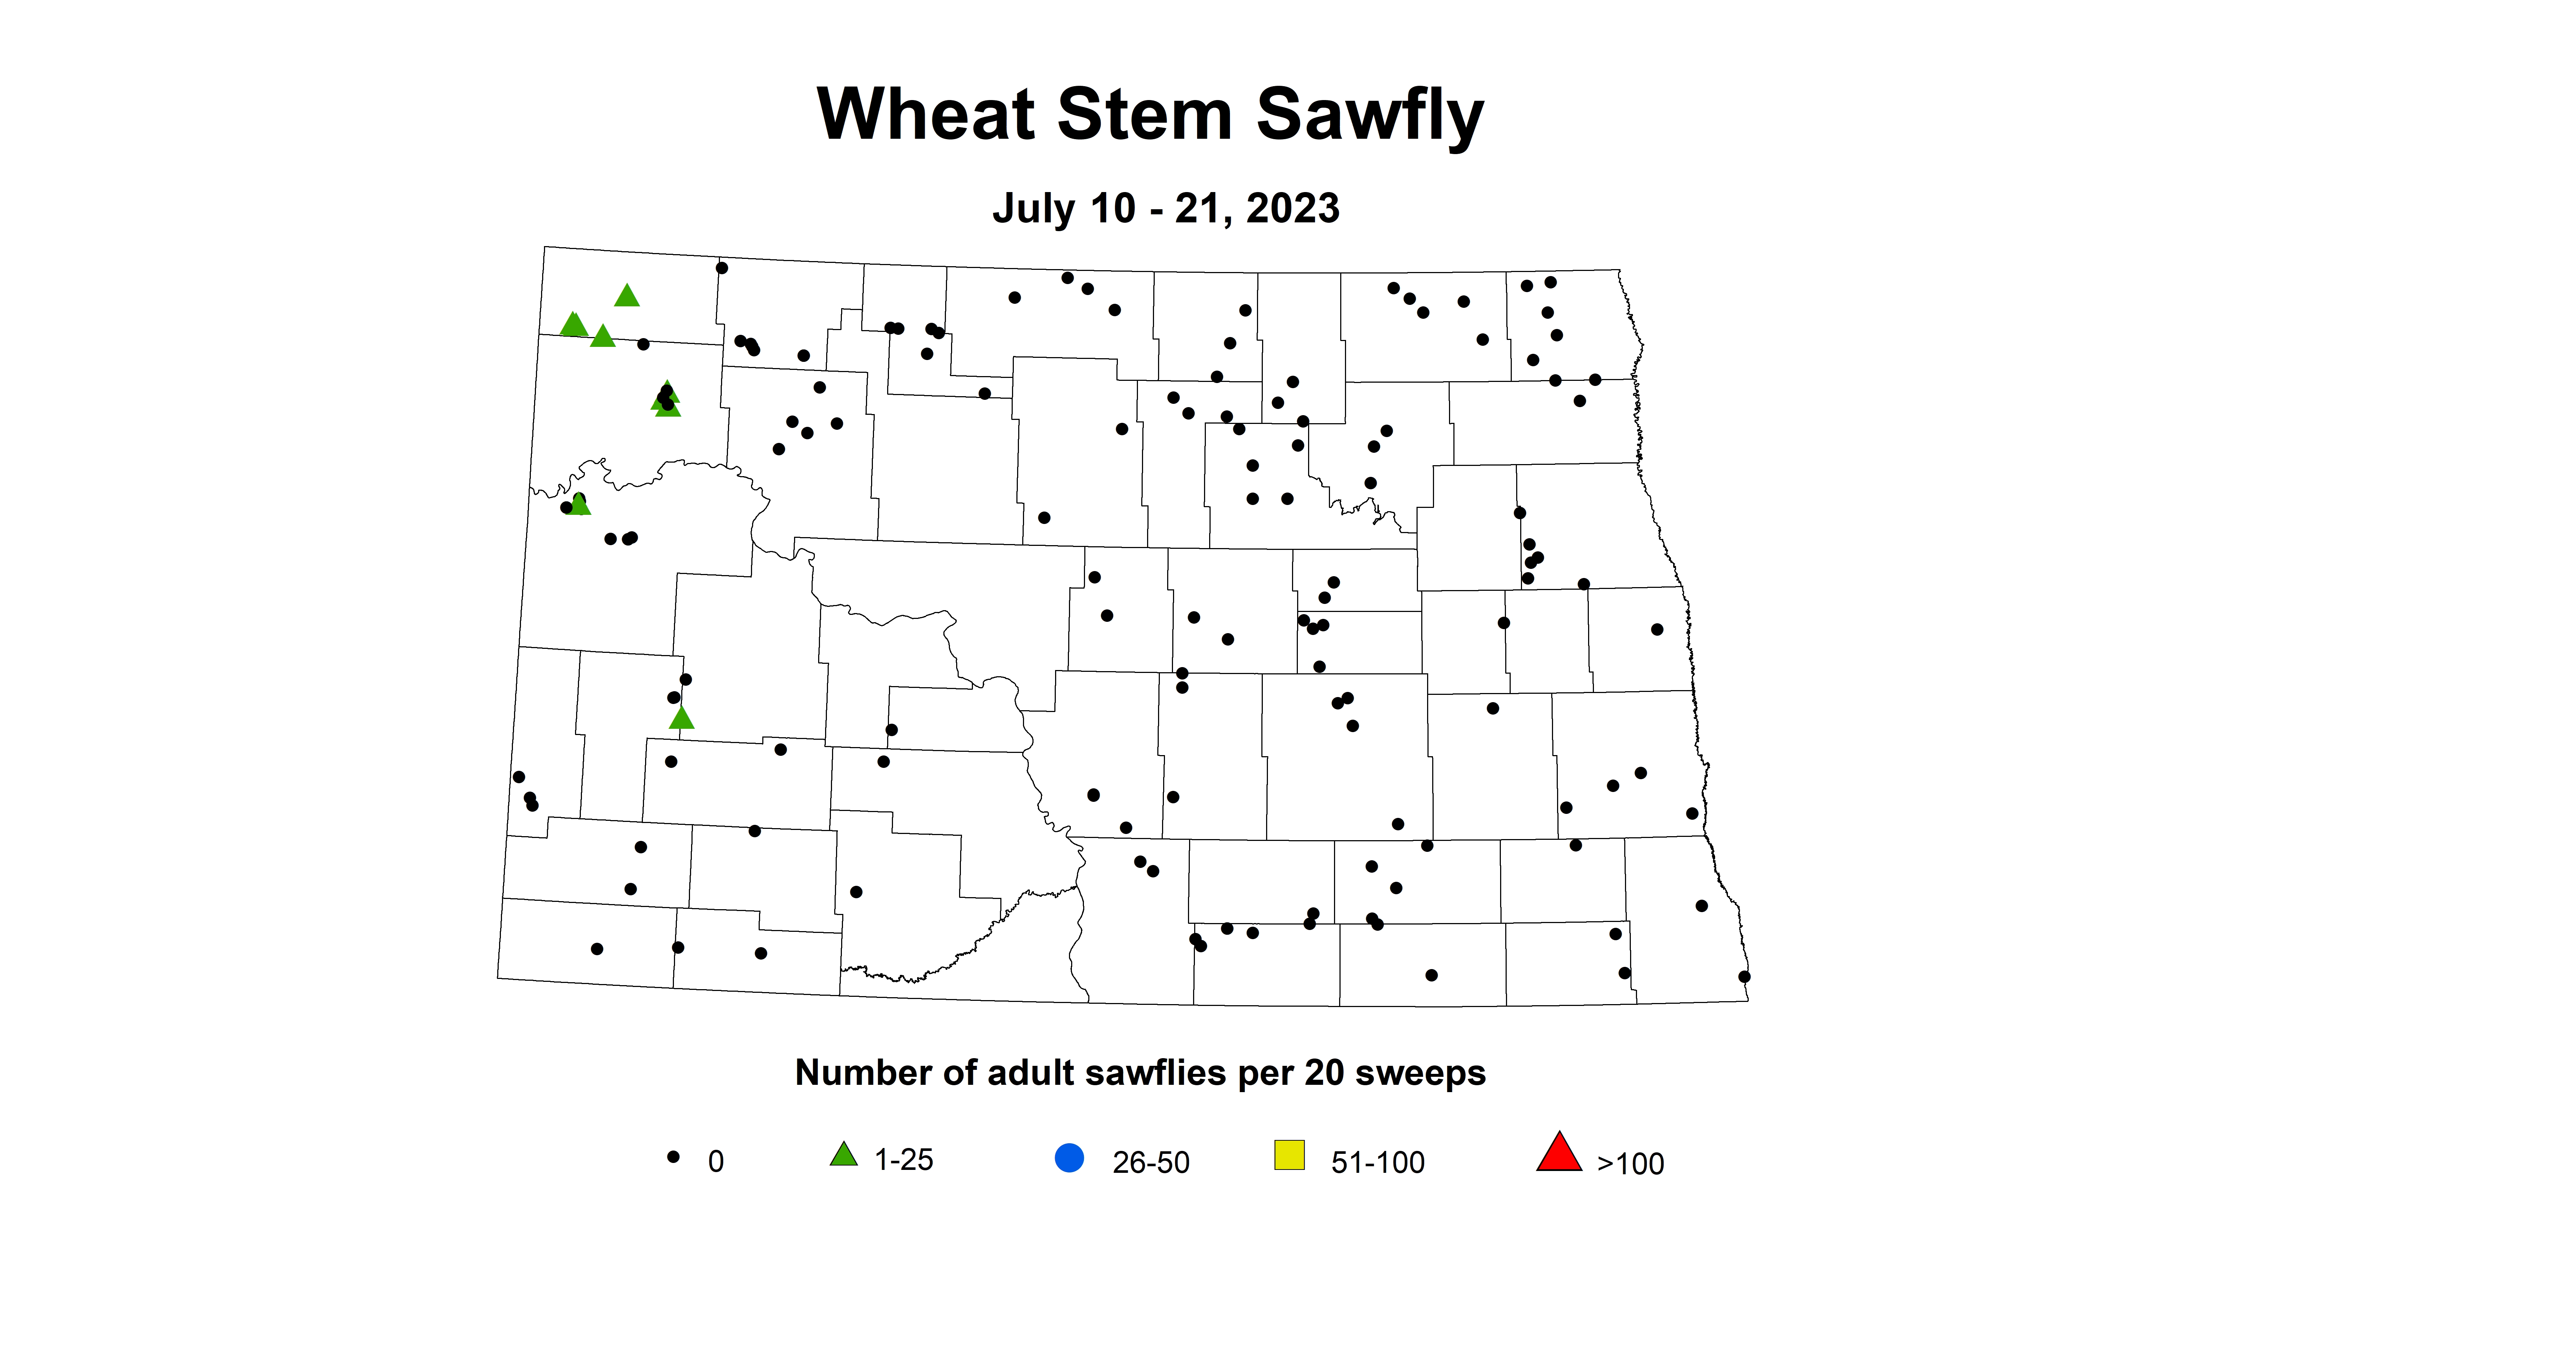 wheat stem sawfly July 10-21 2023